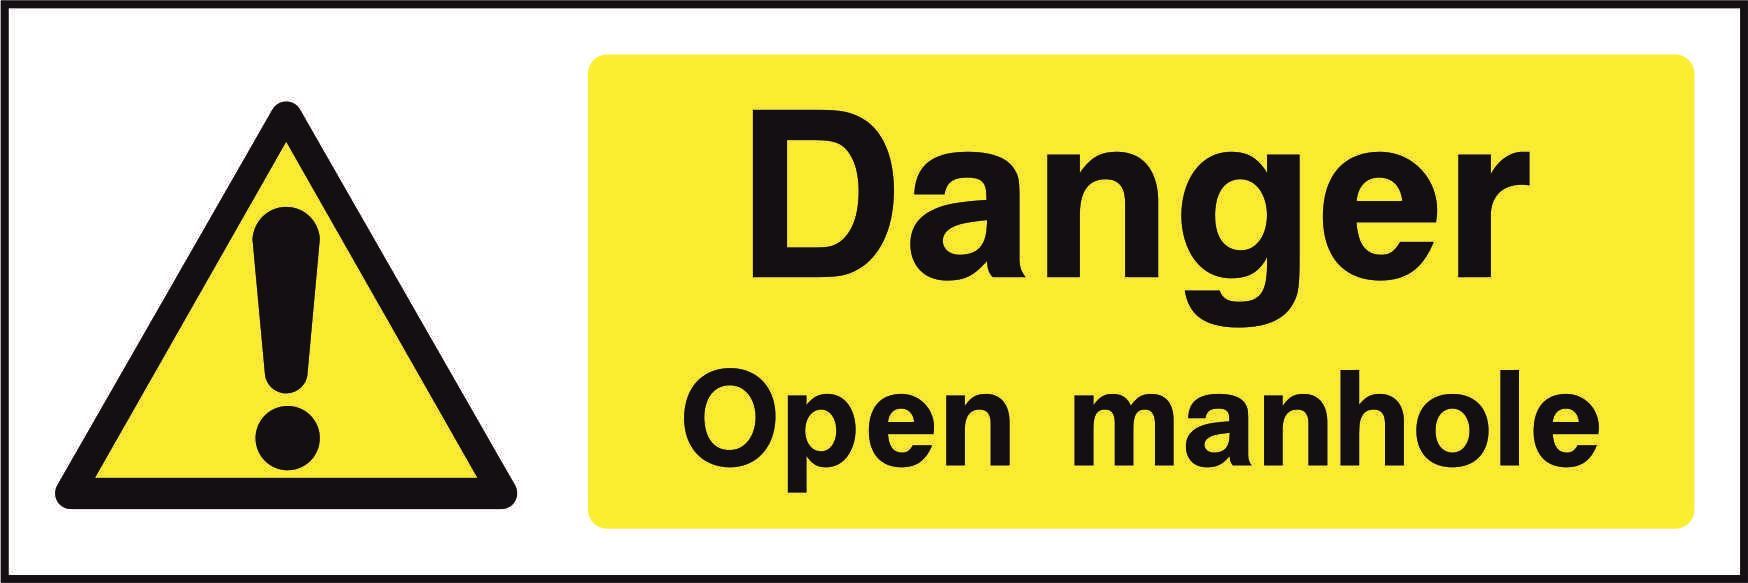 Danger Open manhole